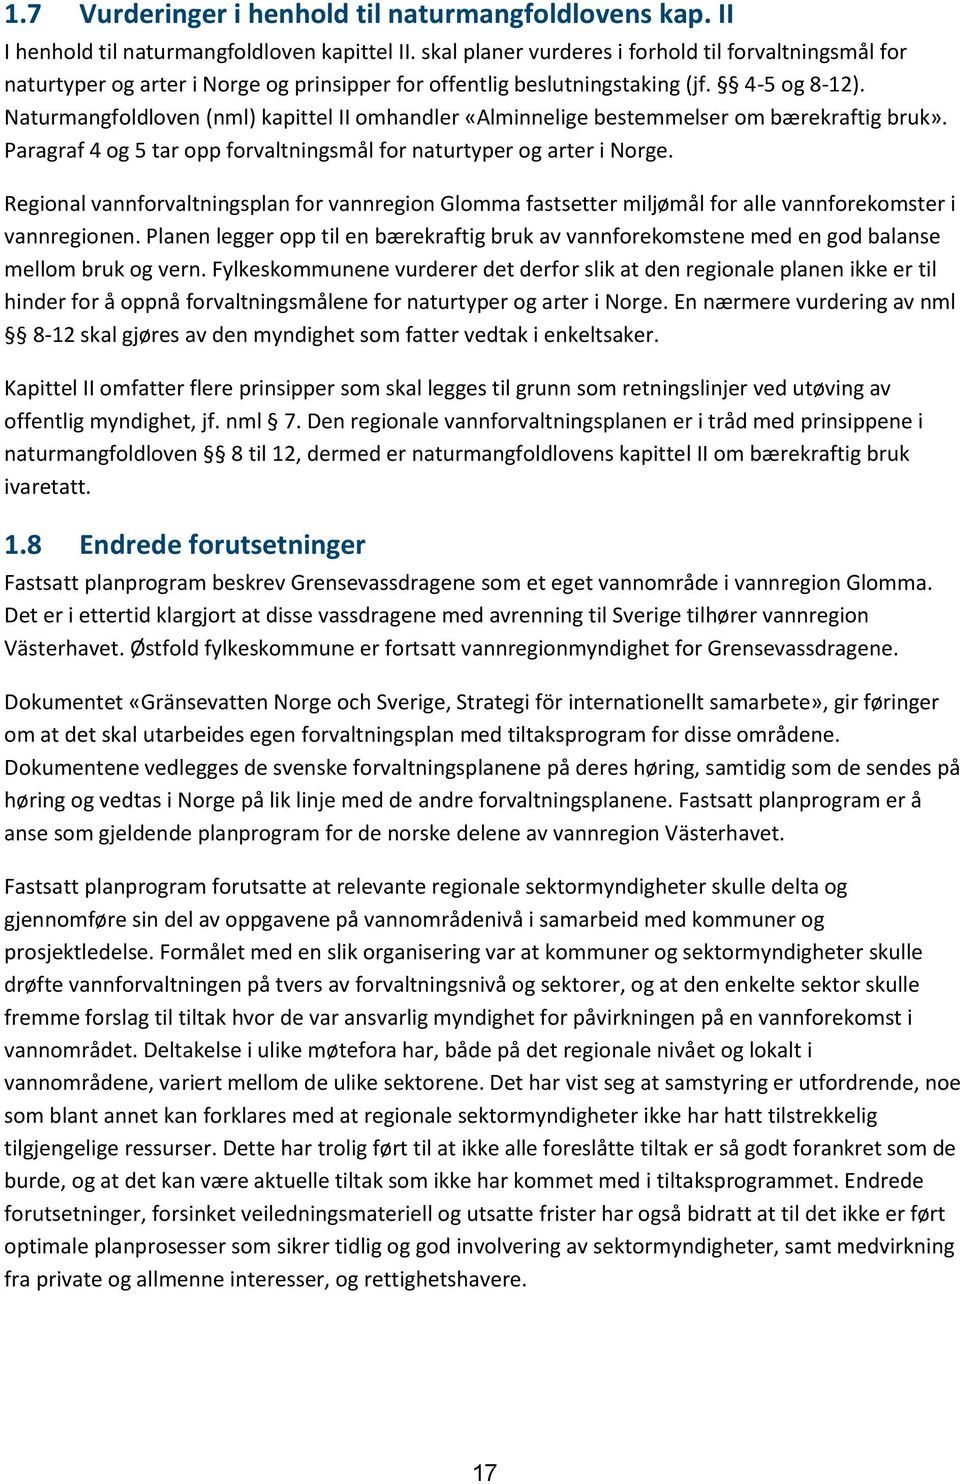 Naturmangfoldloven (nml) kapittel II omhandler «Alminnelige bestemmelser om bærekraftig bruk». Paragraf 4 og 5 tar opp forvaltningsmål for naturtyper og arter i Norge.